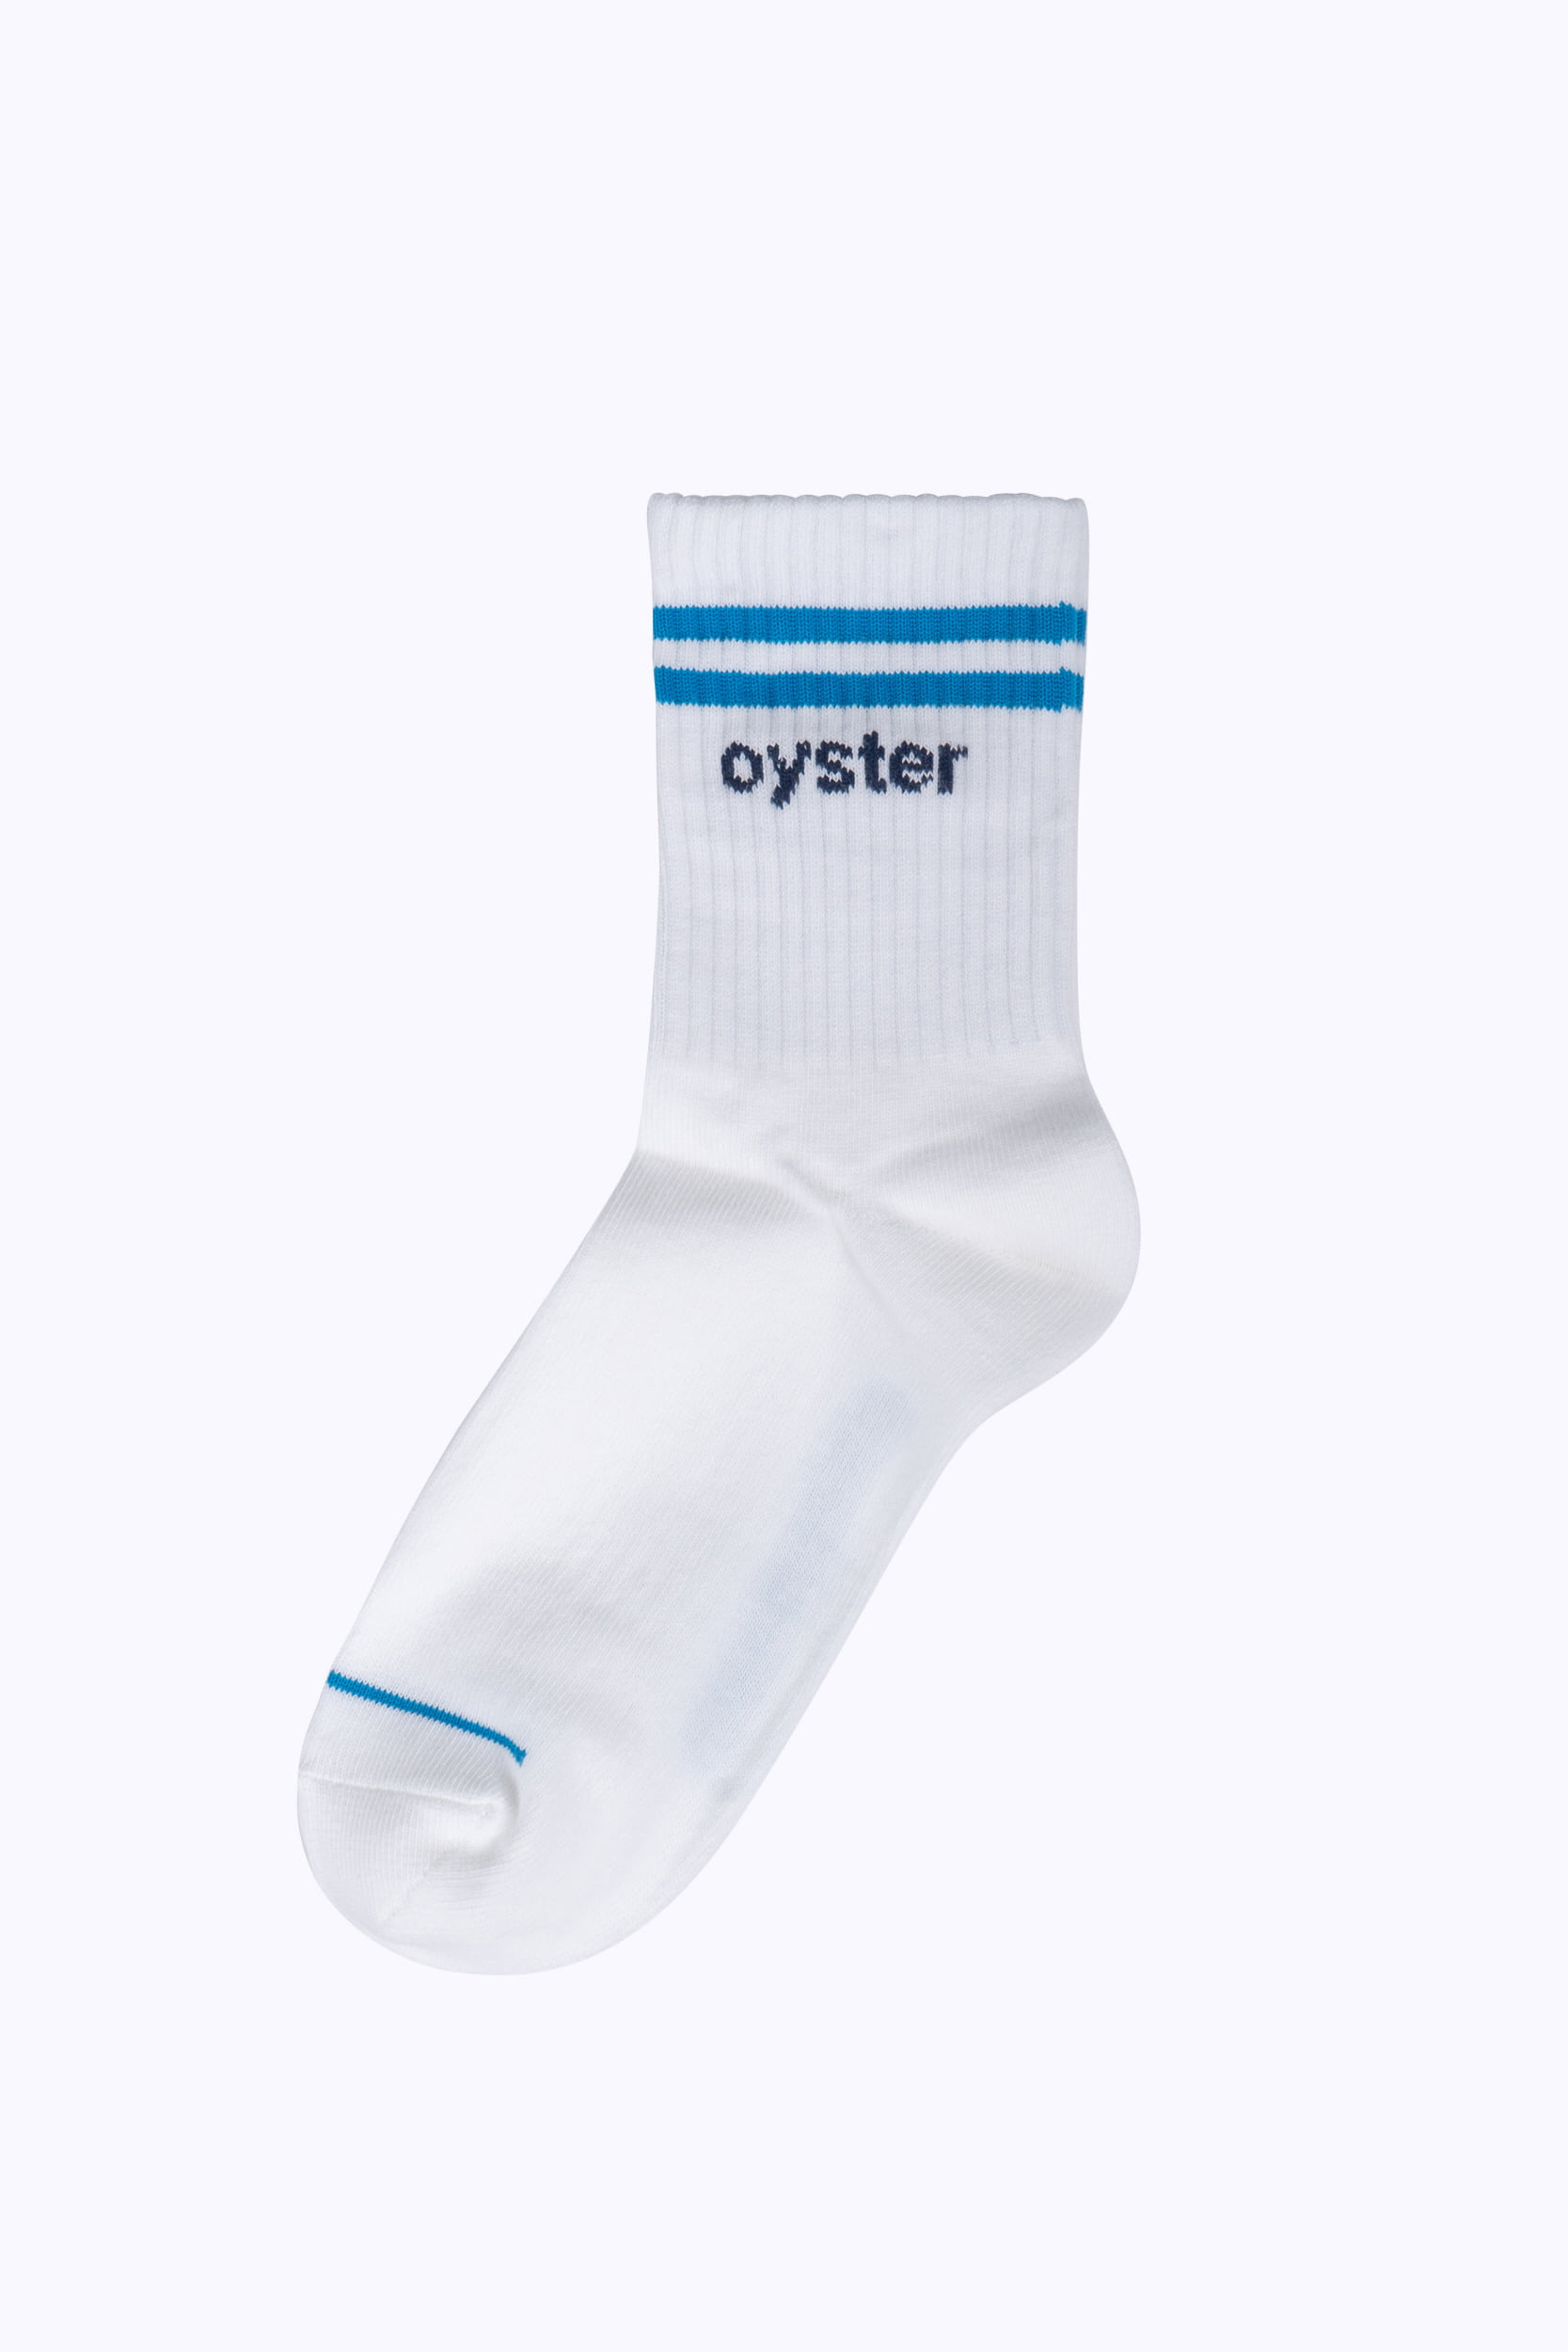 Oyster socks_White